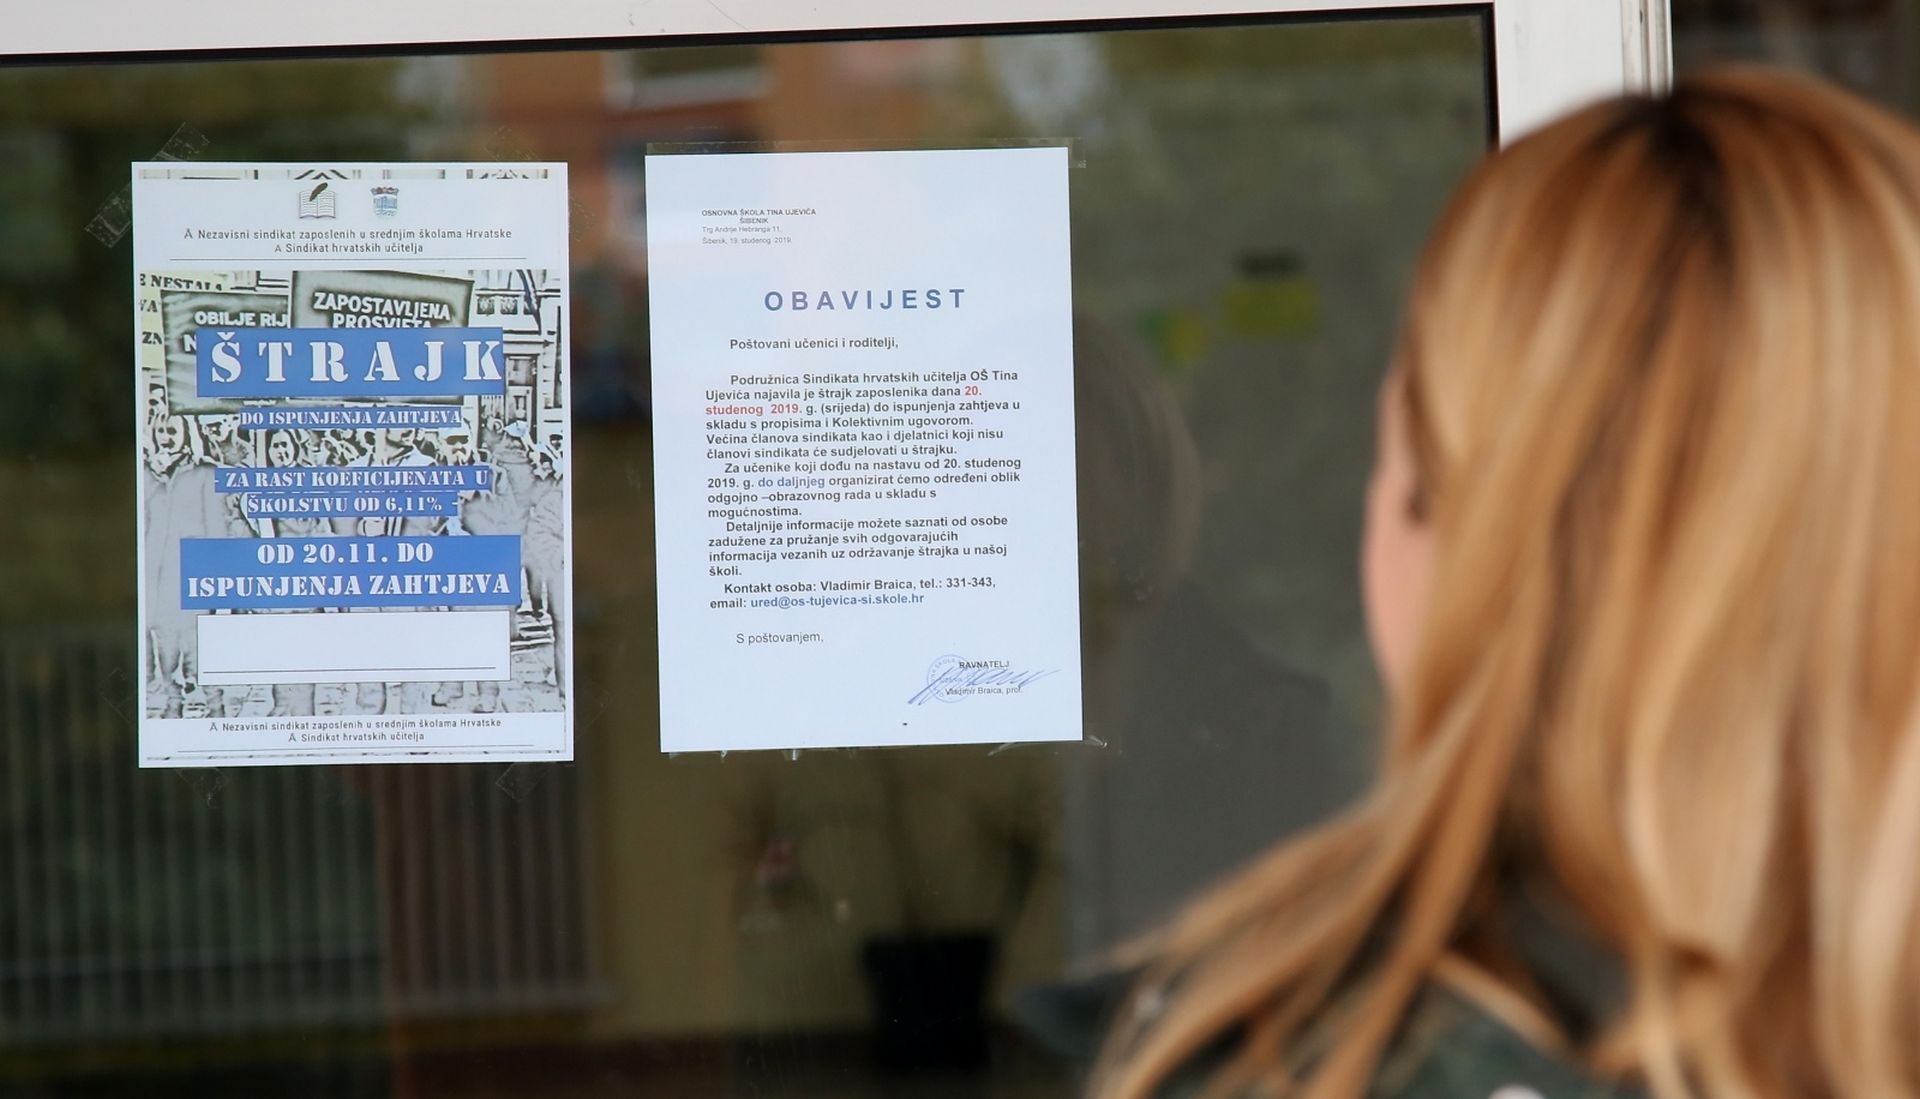 21.11.2019.,Sibenik-U skolama nastavljen strajk do ispunjenja zahtjeva.
Photo: Dusko Jaramaz/PIXSELL